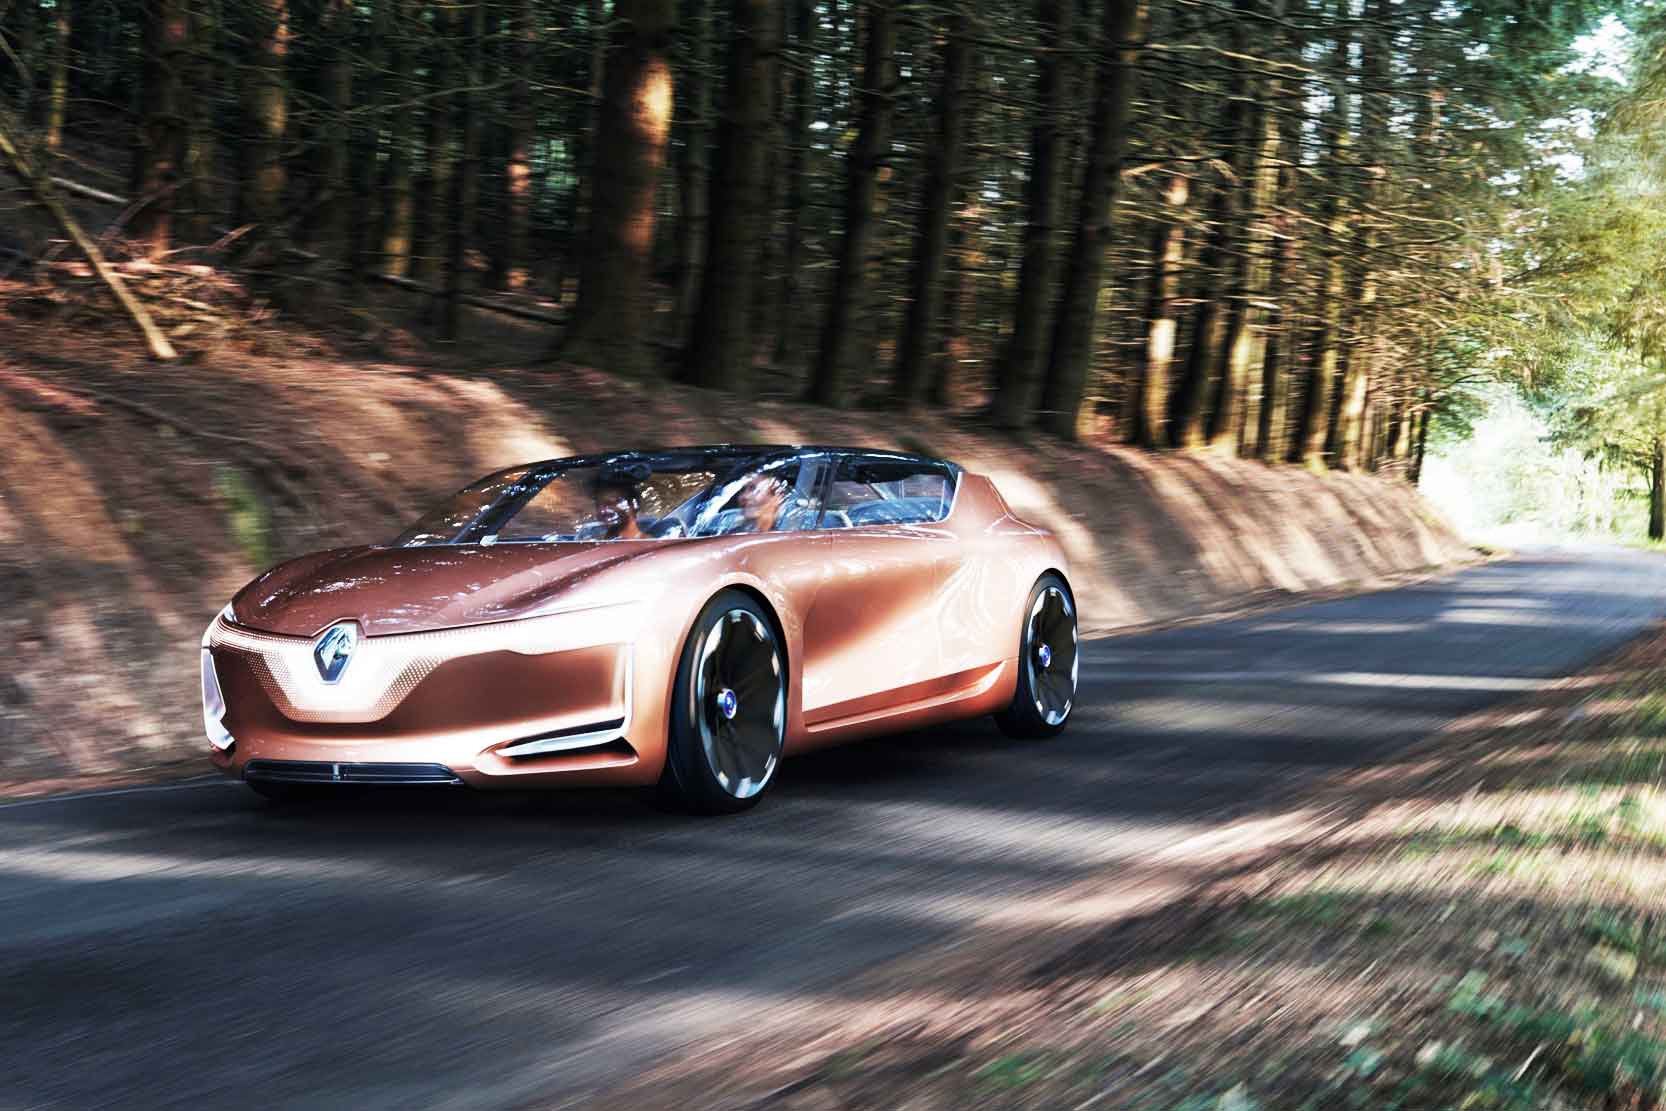 Image principale de l'actu: Renault symbioz le design et l architecture 